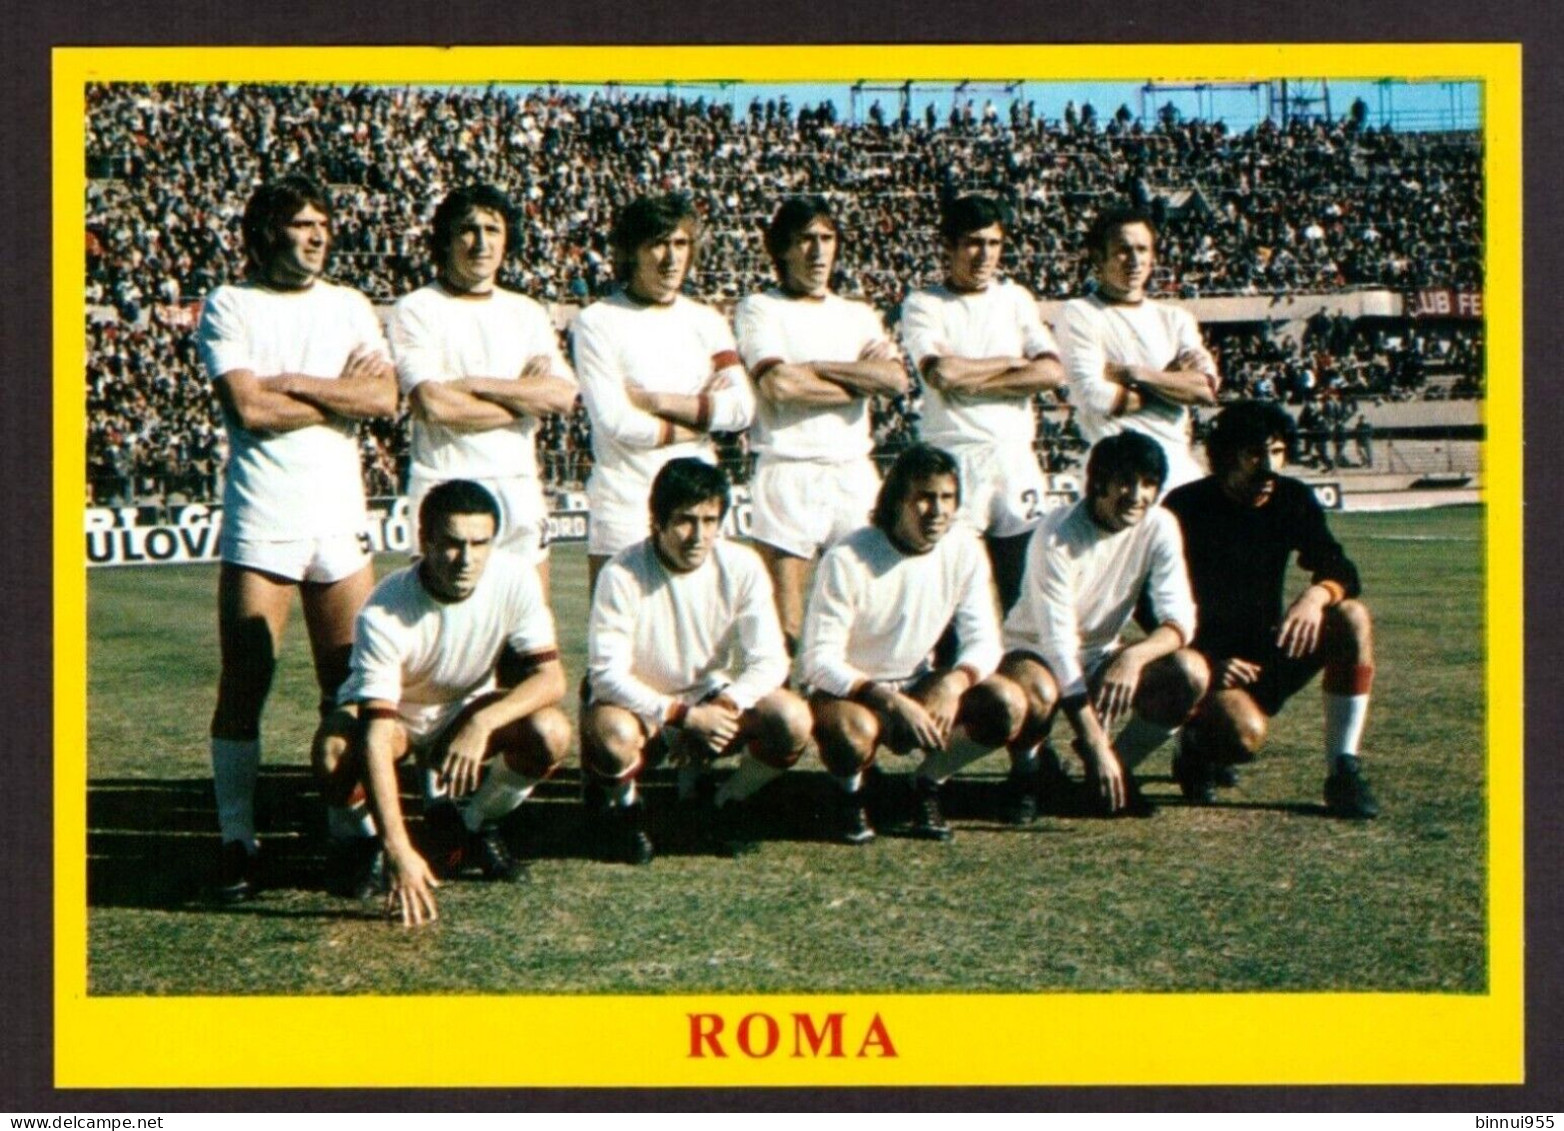 Foglietto Calcio Roma Formazione 1975 - Football